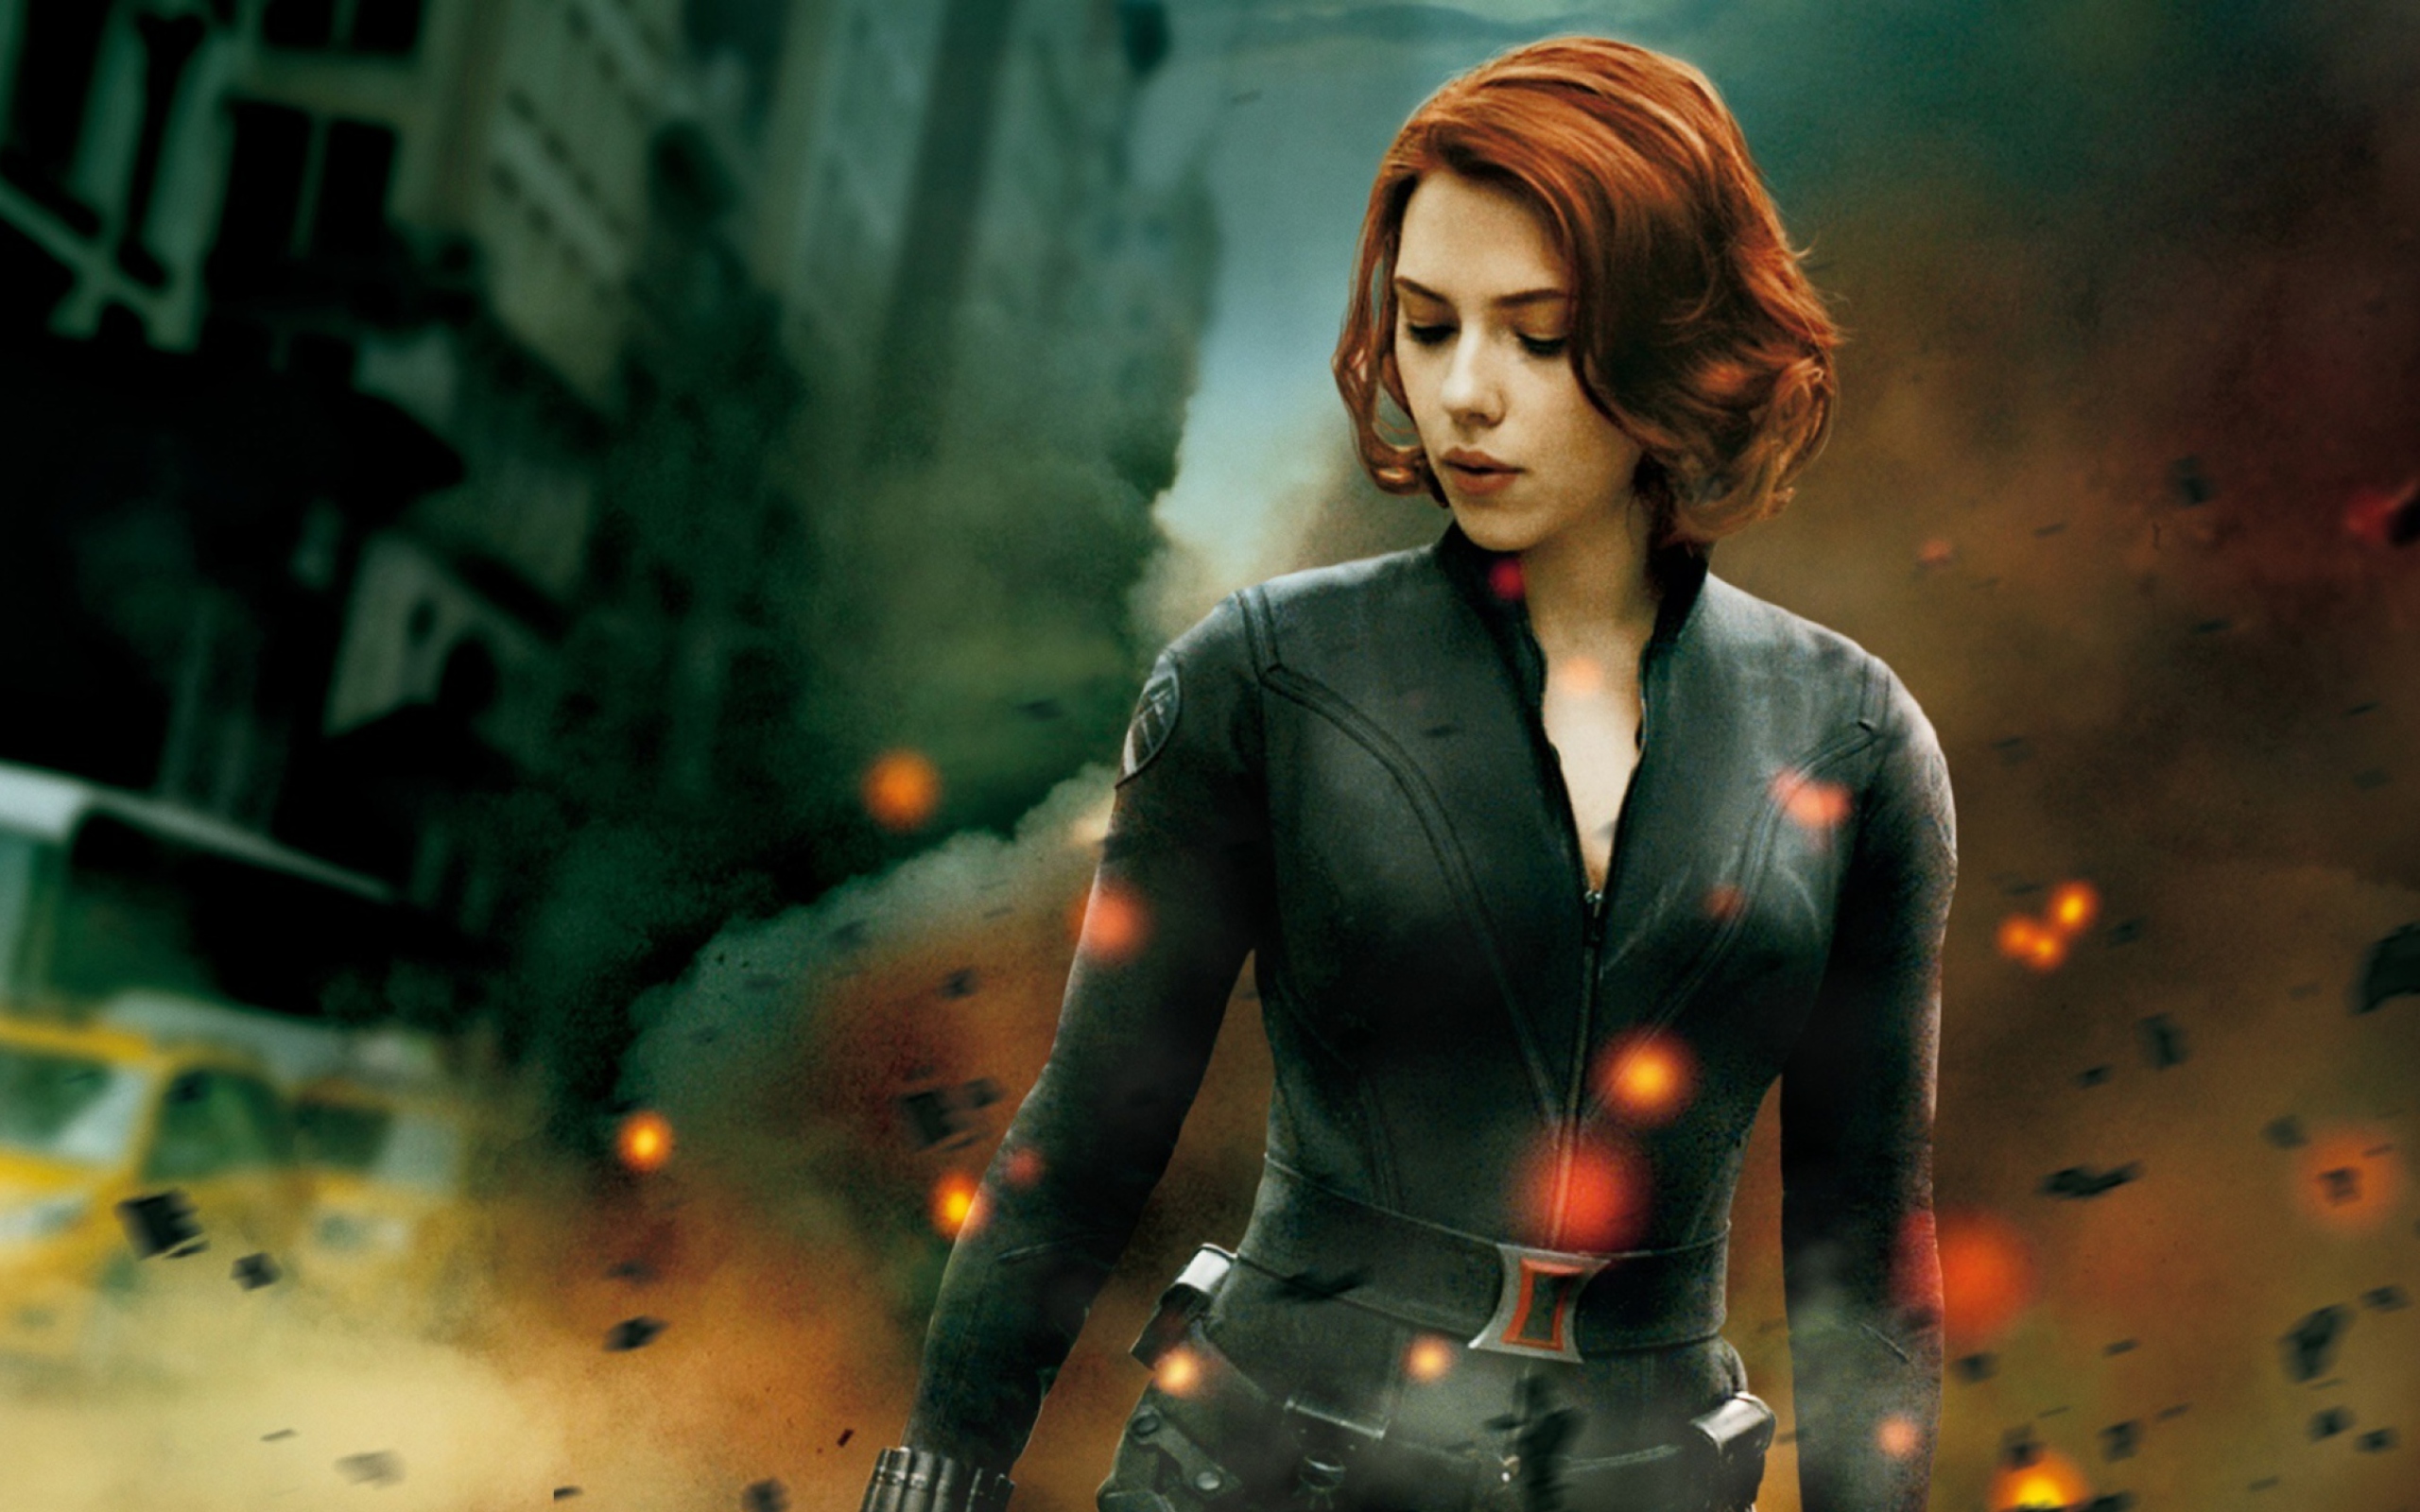 The Avengers - Black Widow wallpaper 2560x1600